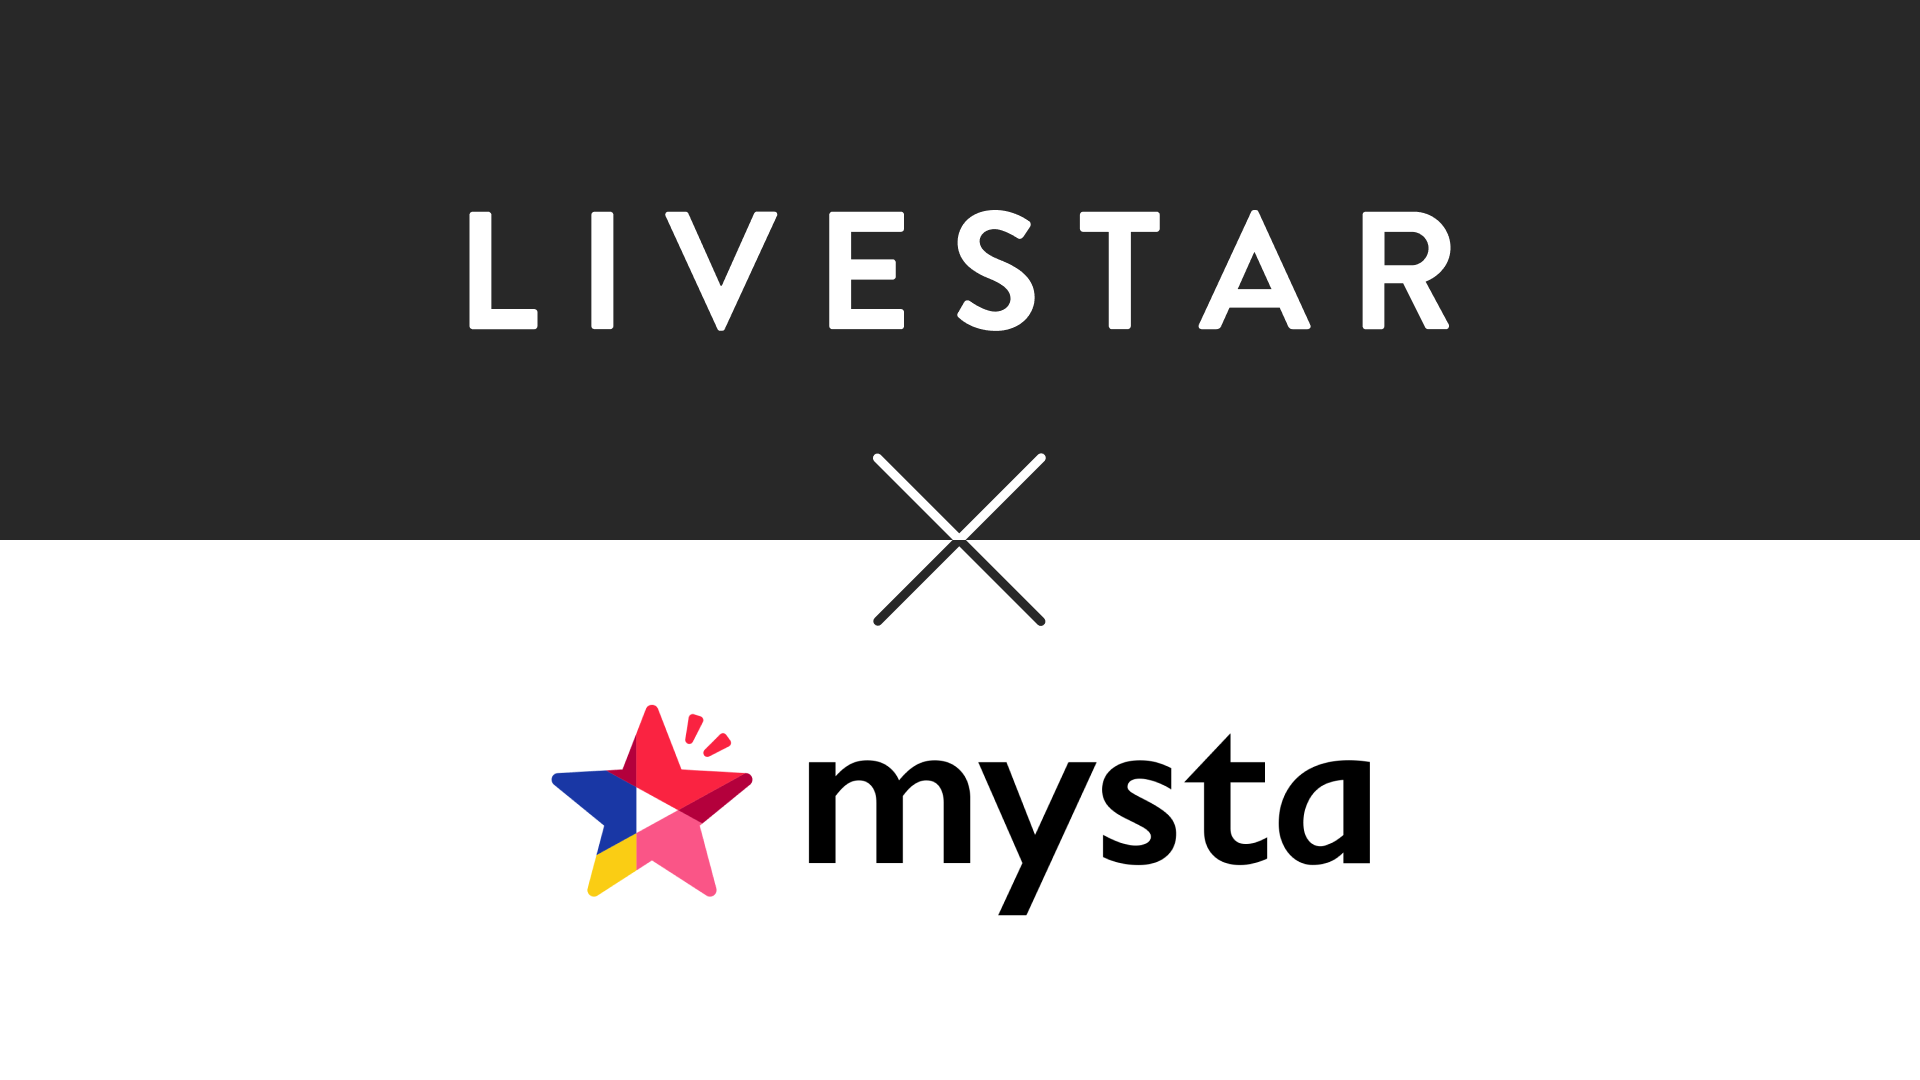 mysta株式会社と業務提携し、mystaキャストへのライバーマネジメントサービス「myLIVEキャスト」を開始